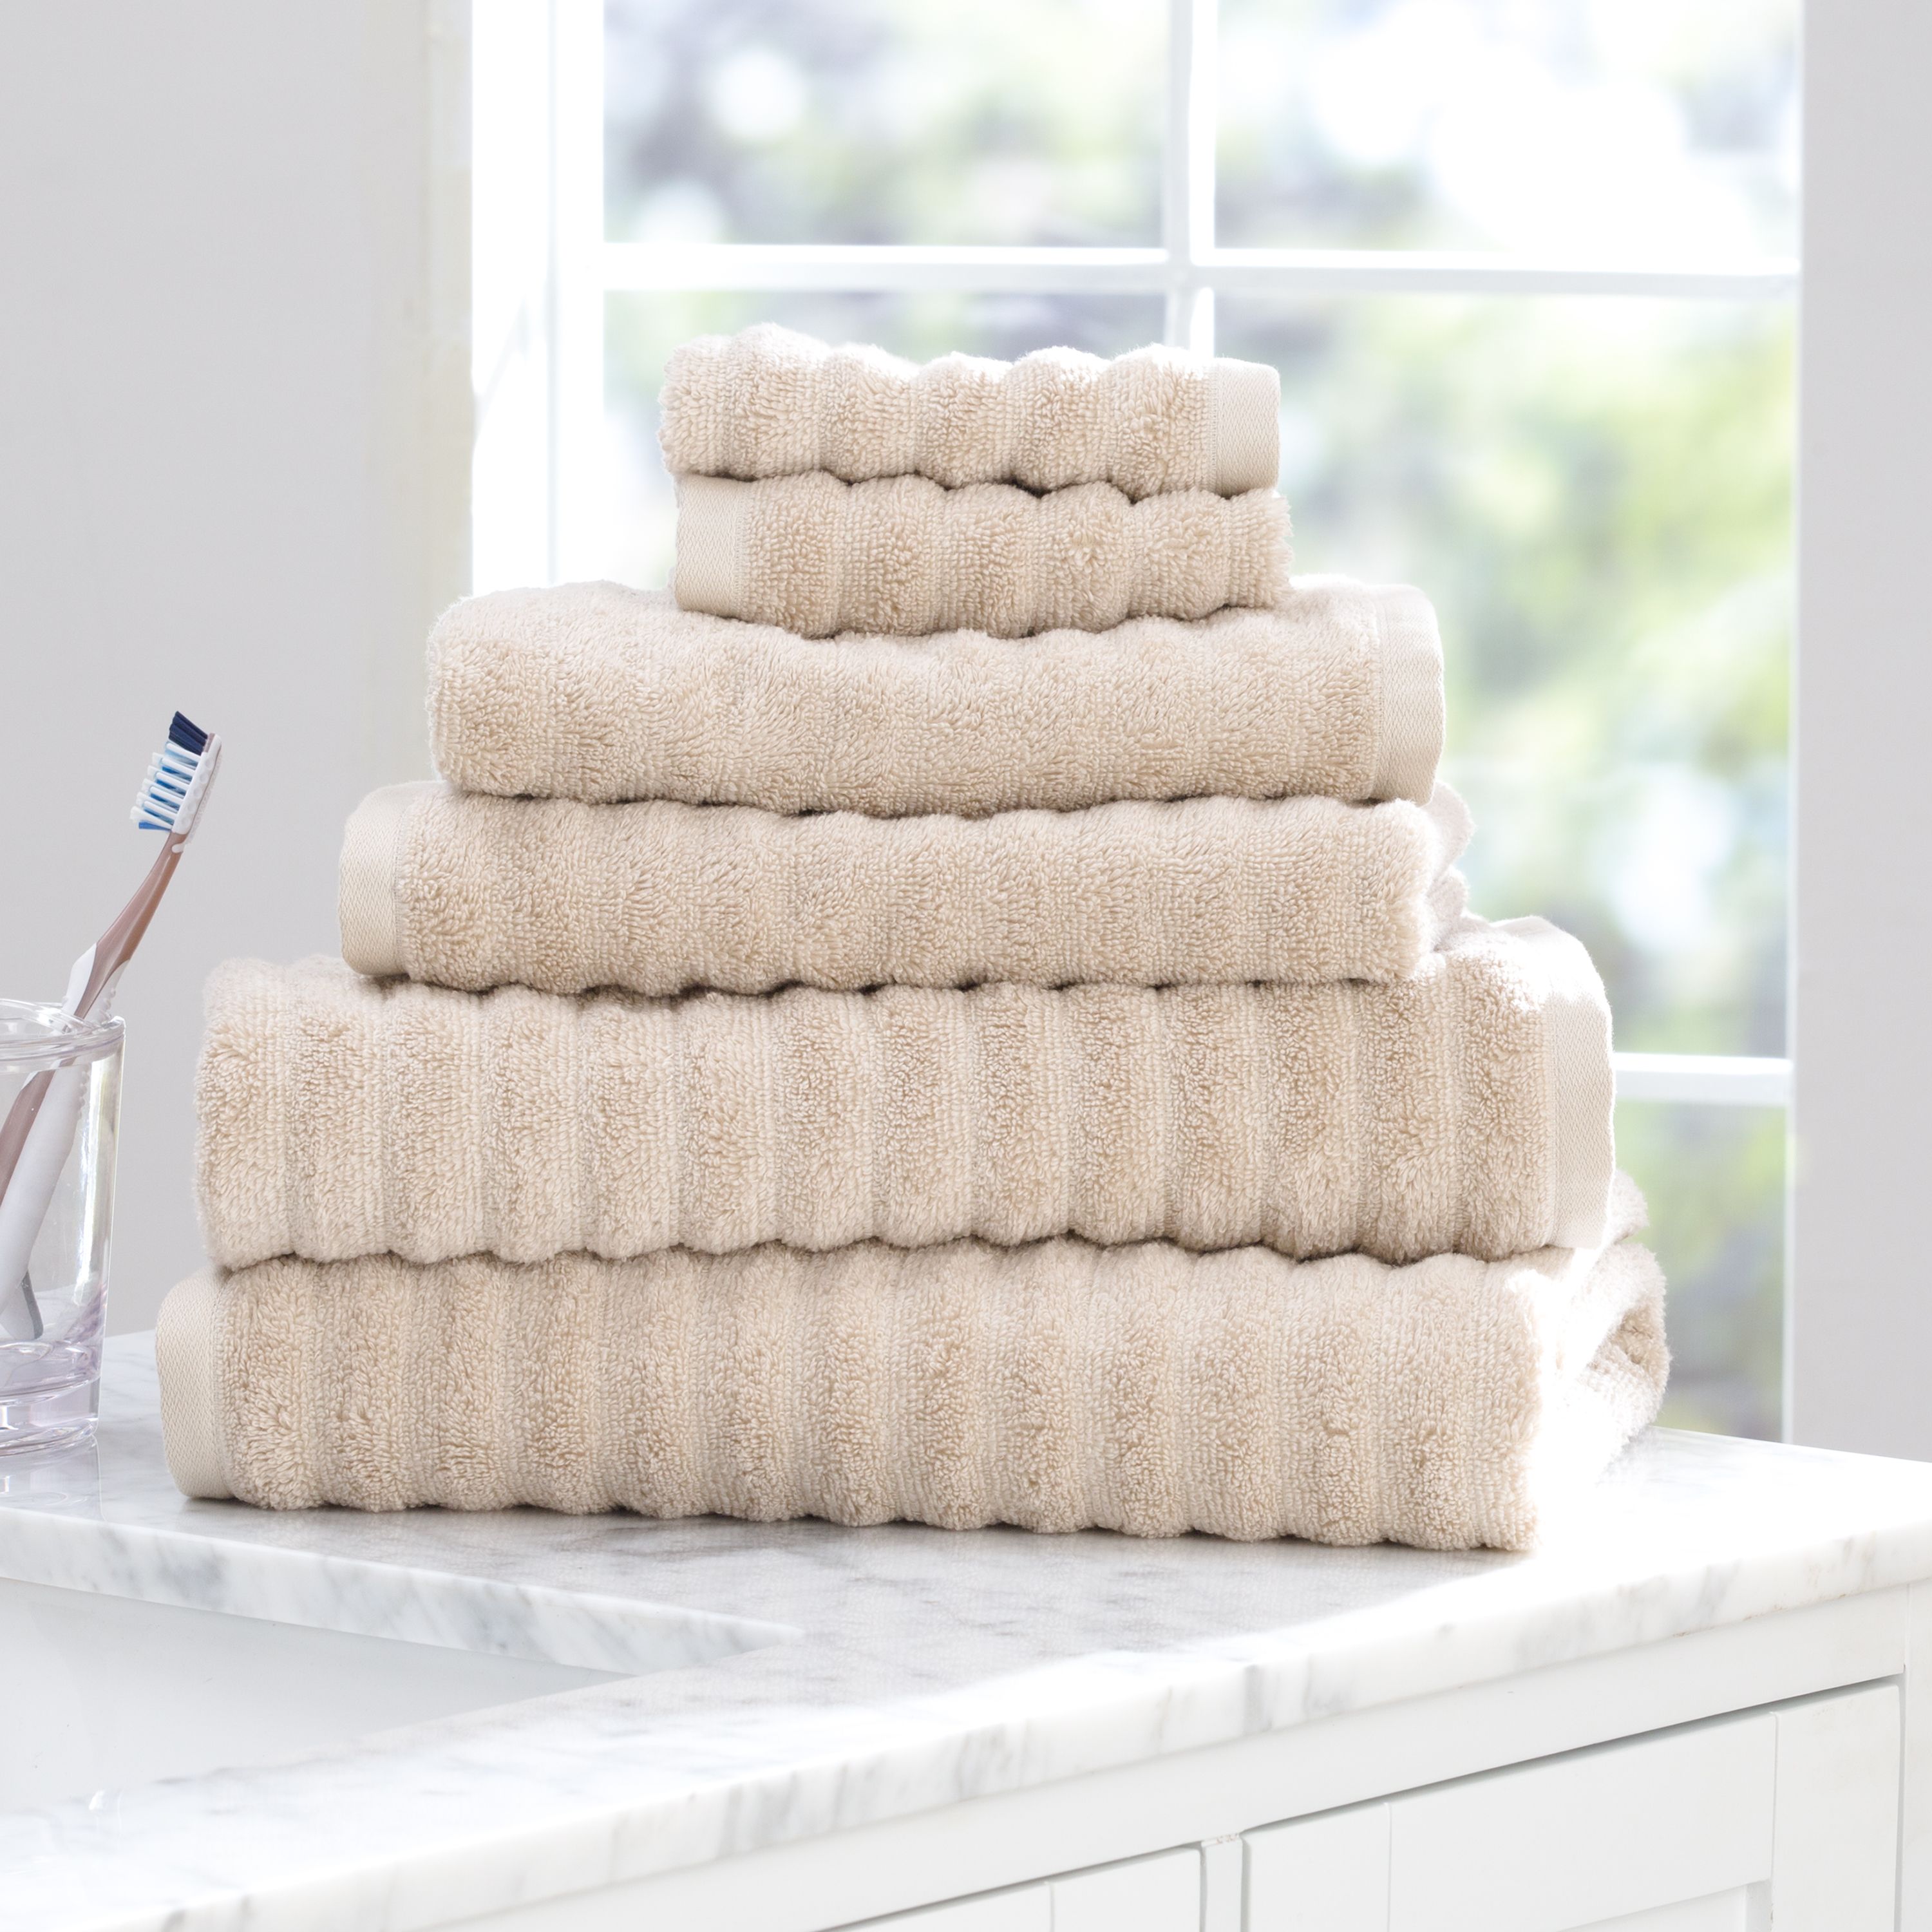 Mainstays 6 Piece Textures Cotton Bath Towel Set, Beige - image 3 of 9